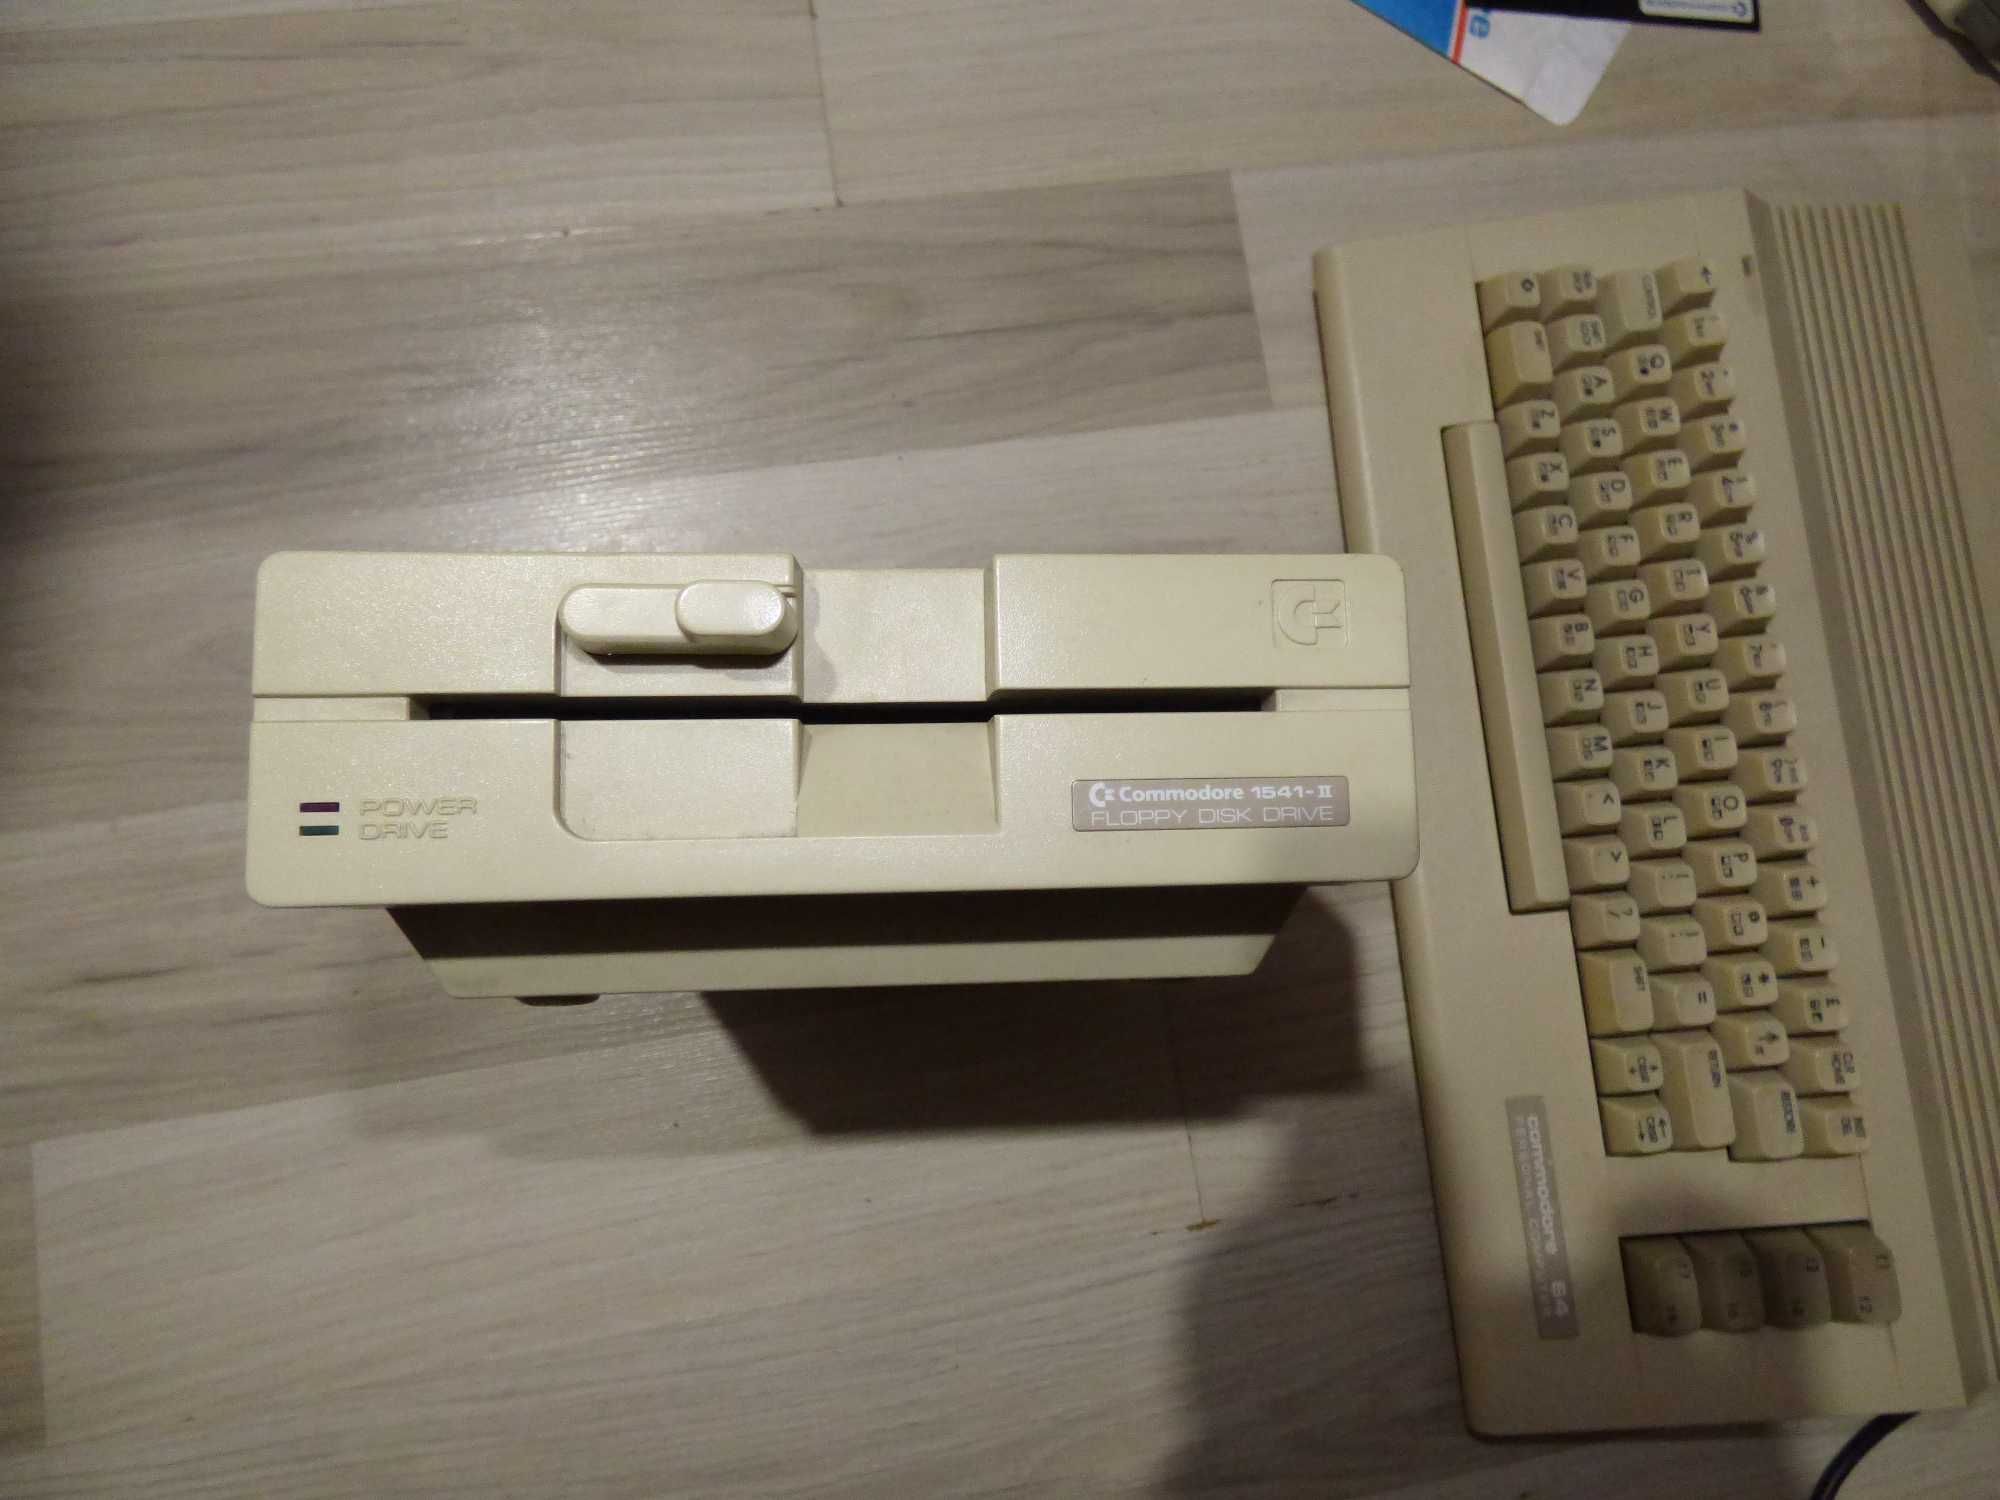 Unitate disk Commodore 64 - 1541 II